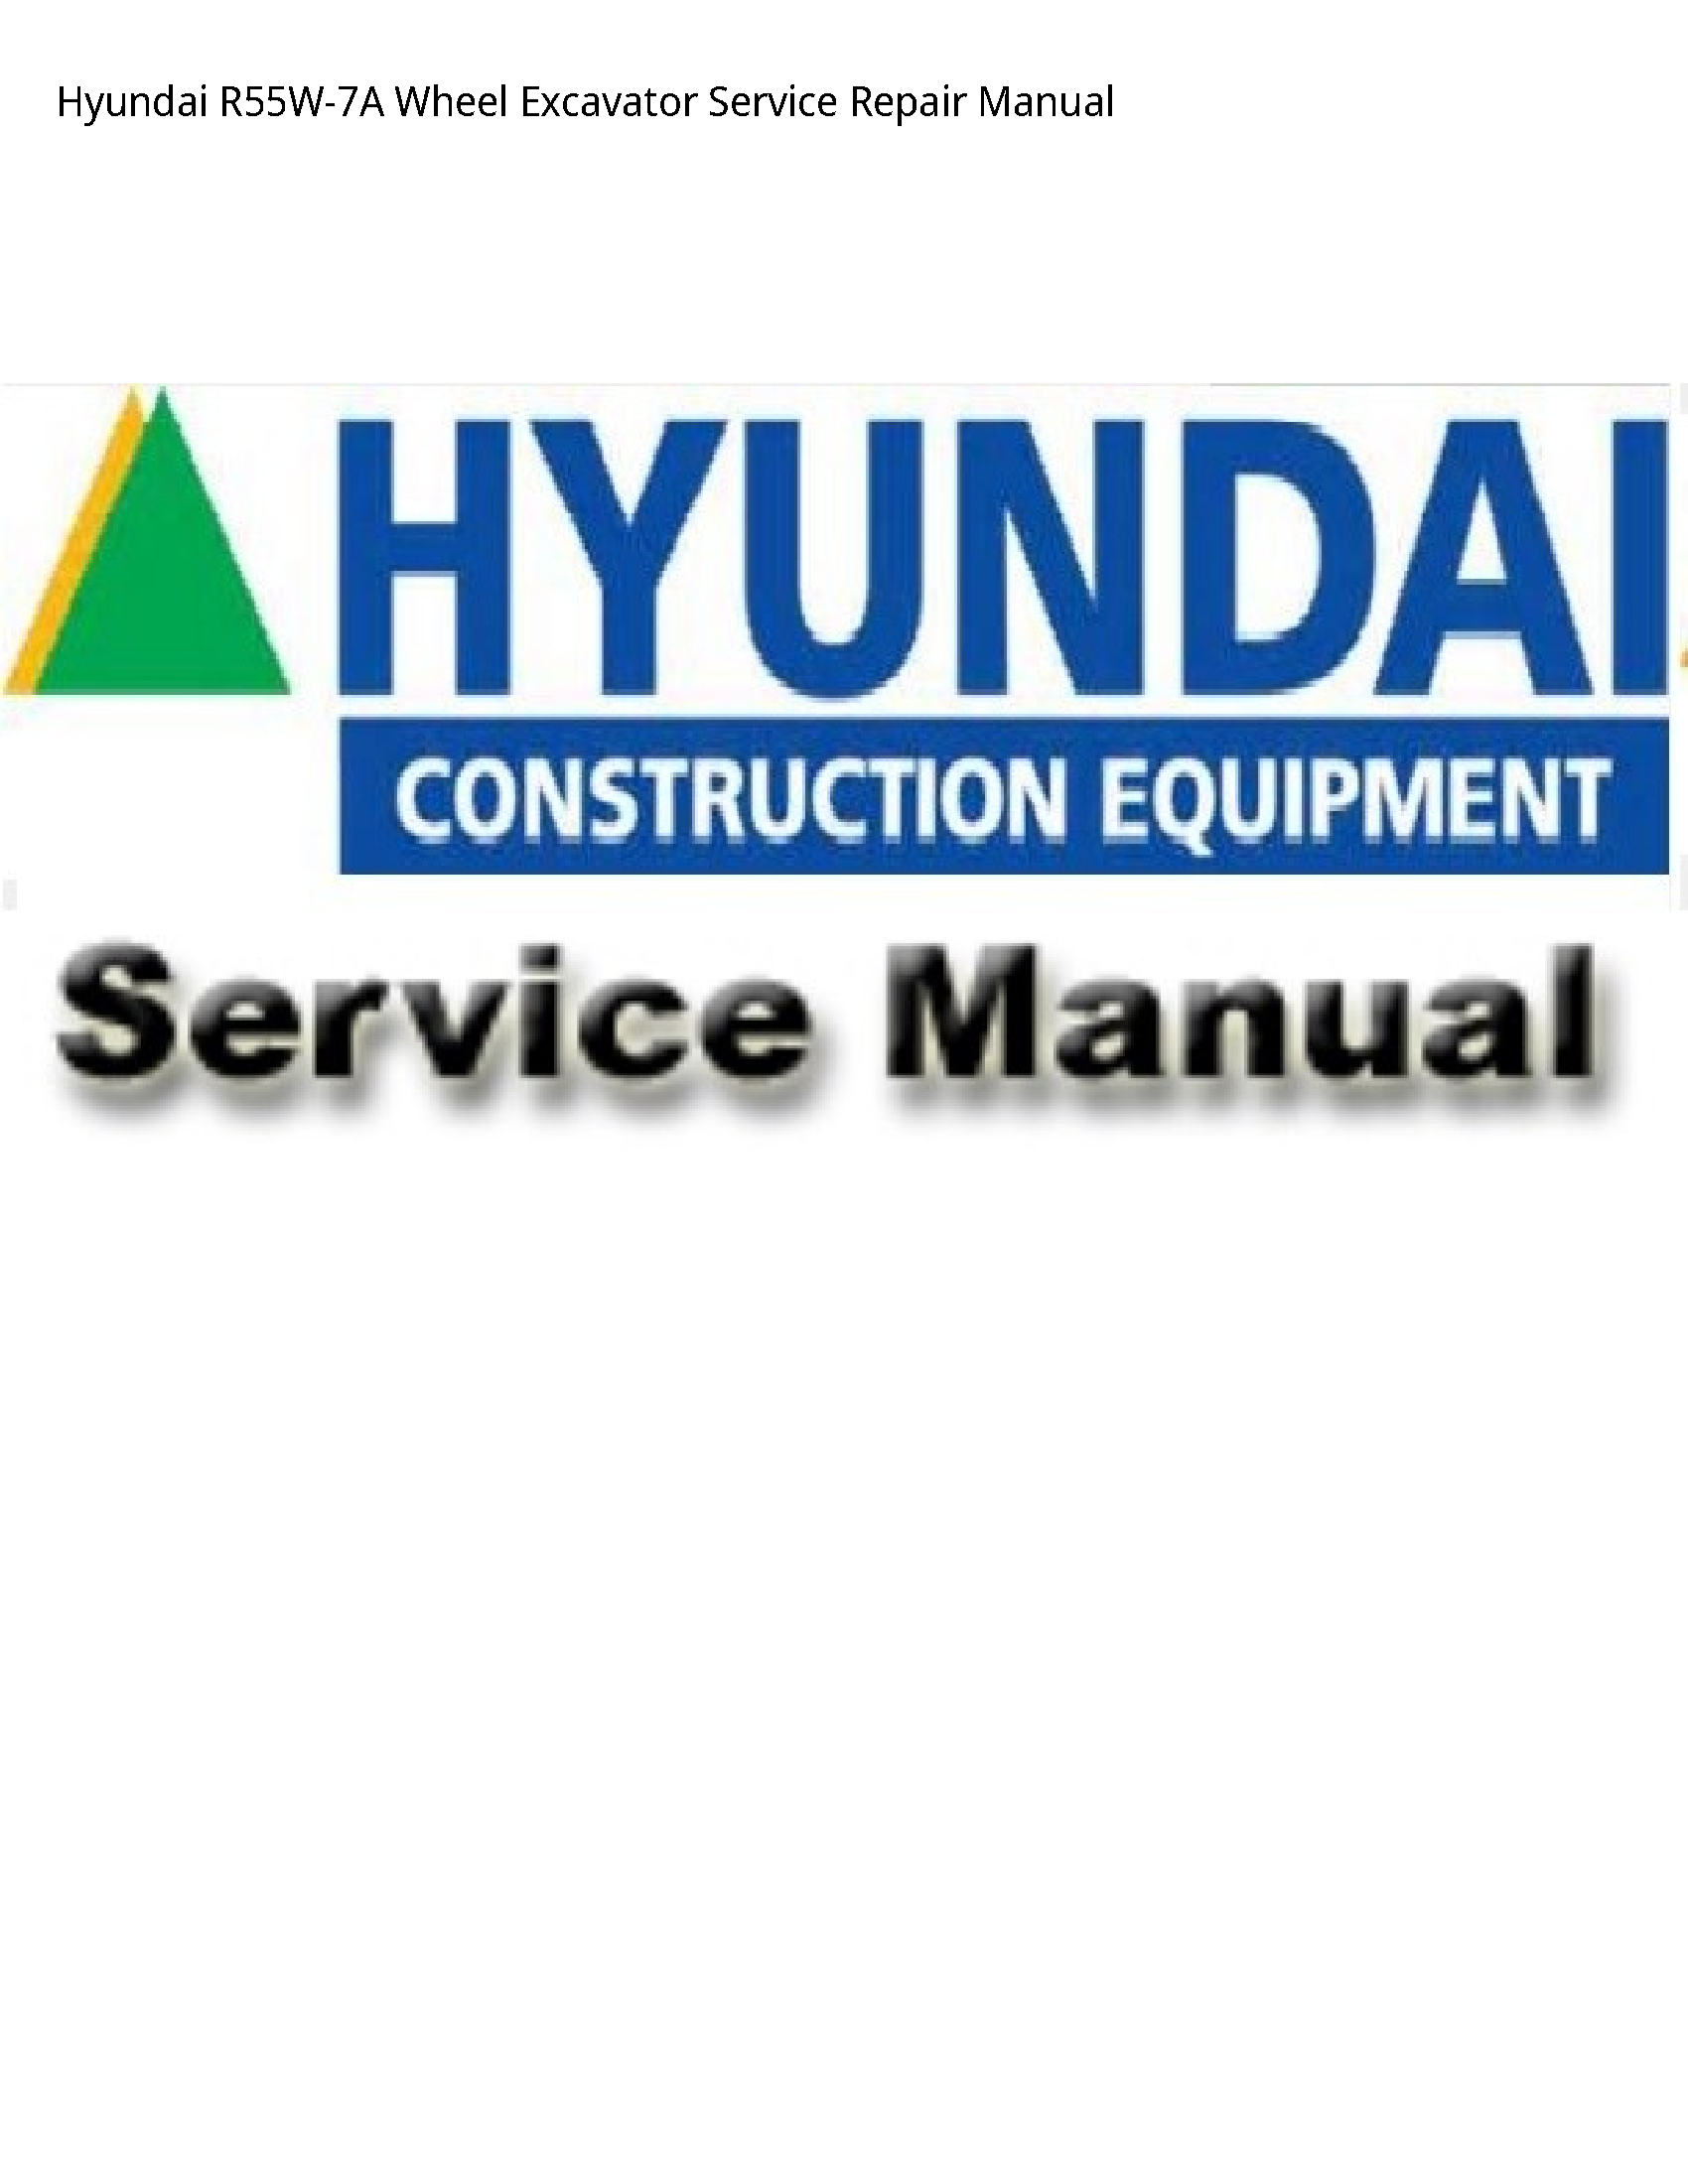 Hyundai R55W-7A Wheel Excavator manual